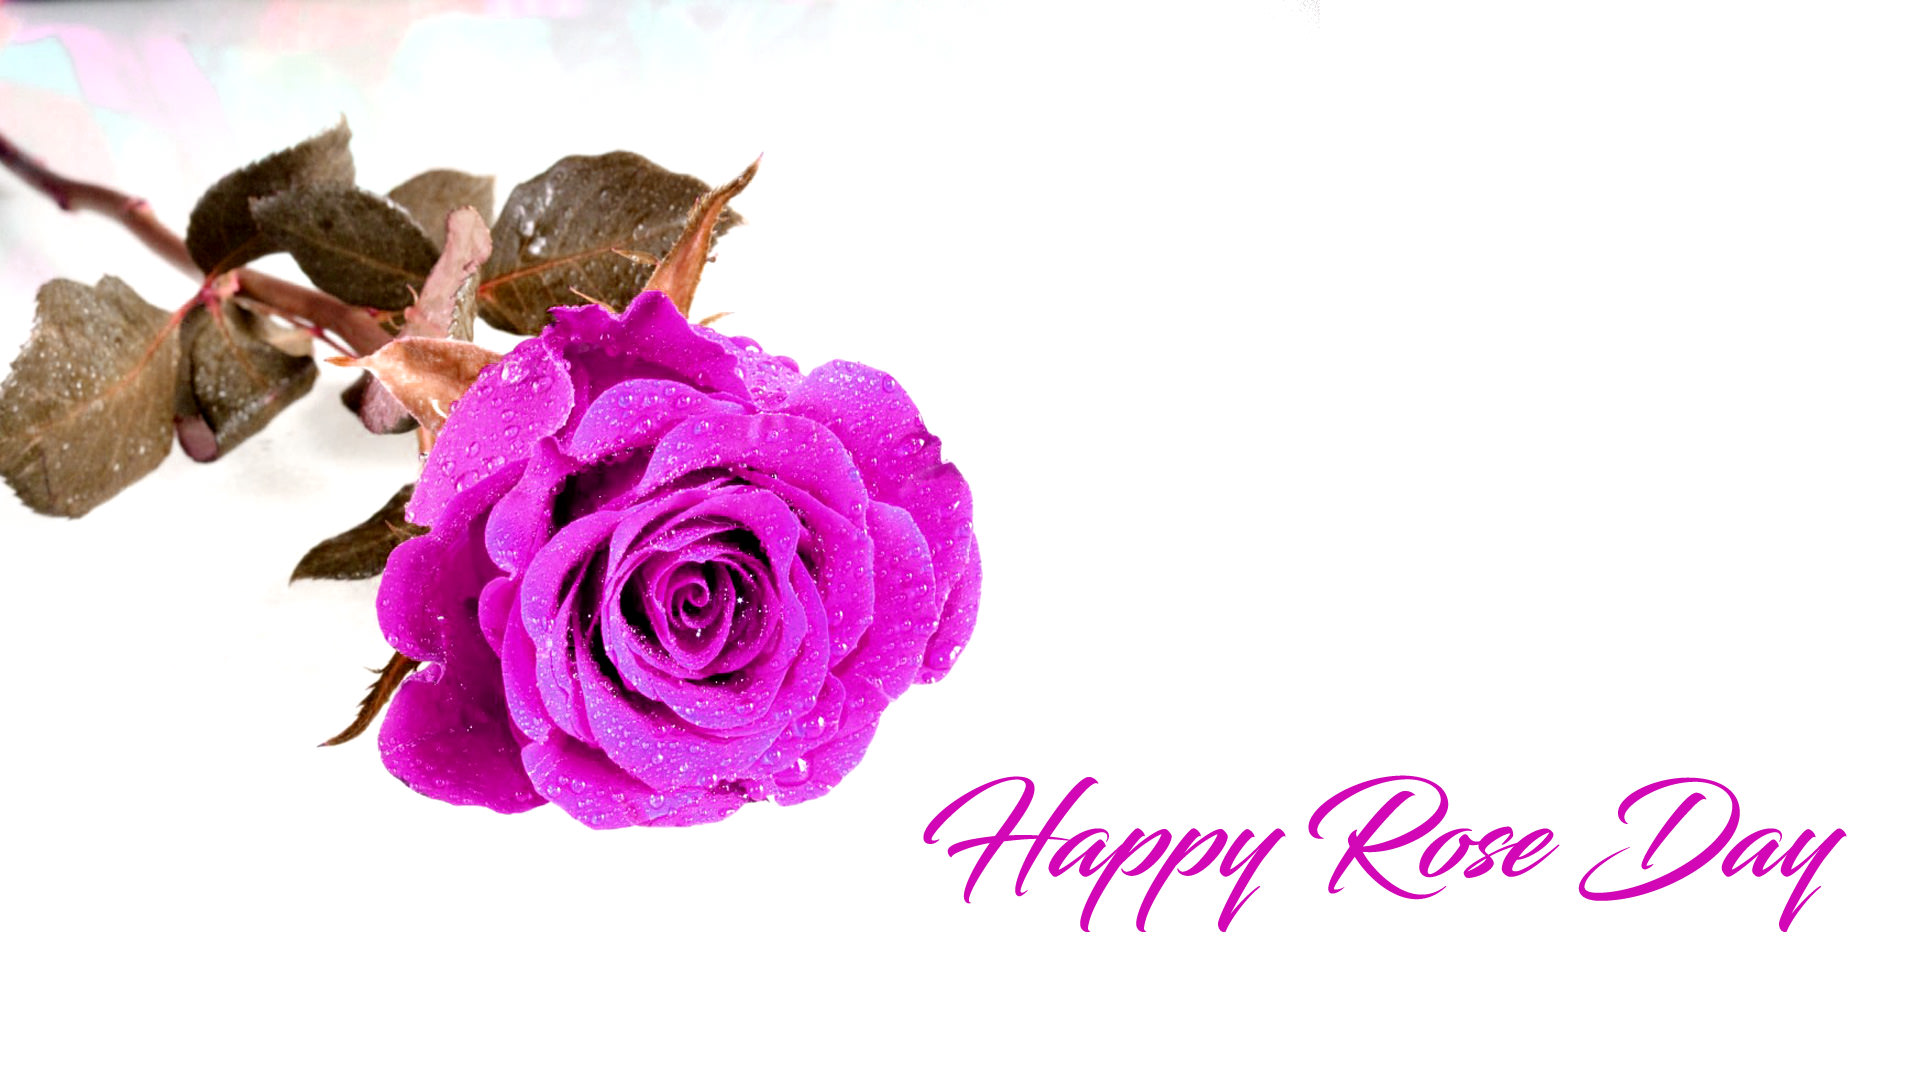 Violet Color Roses for Valentine Rose Day